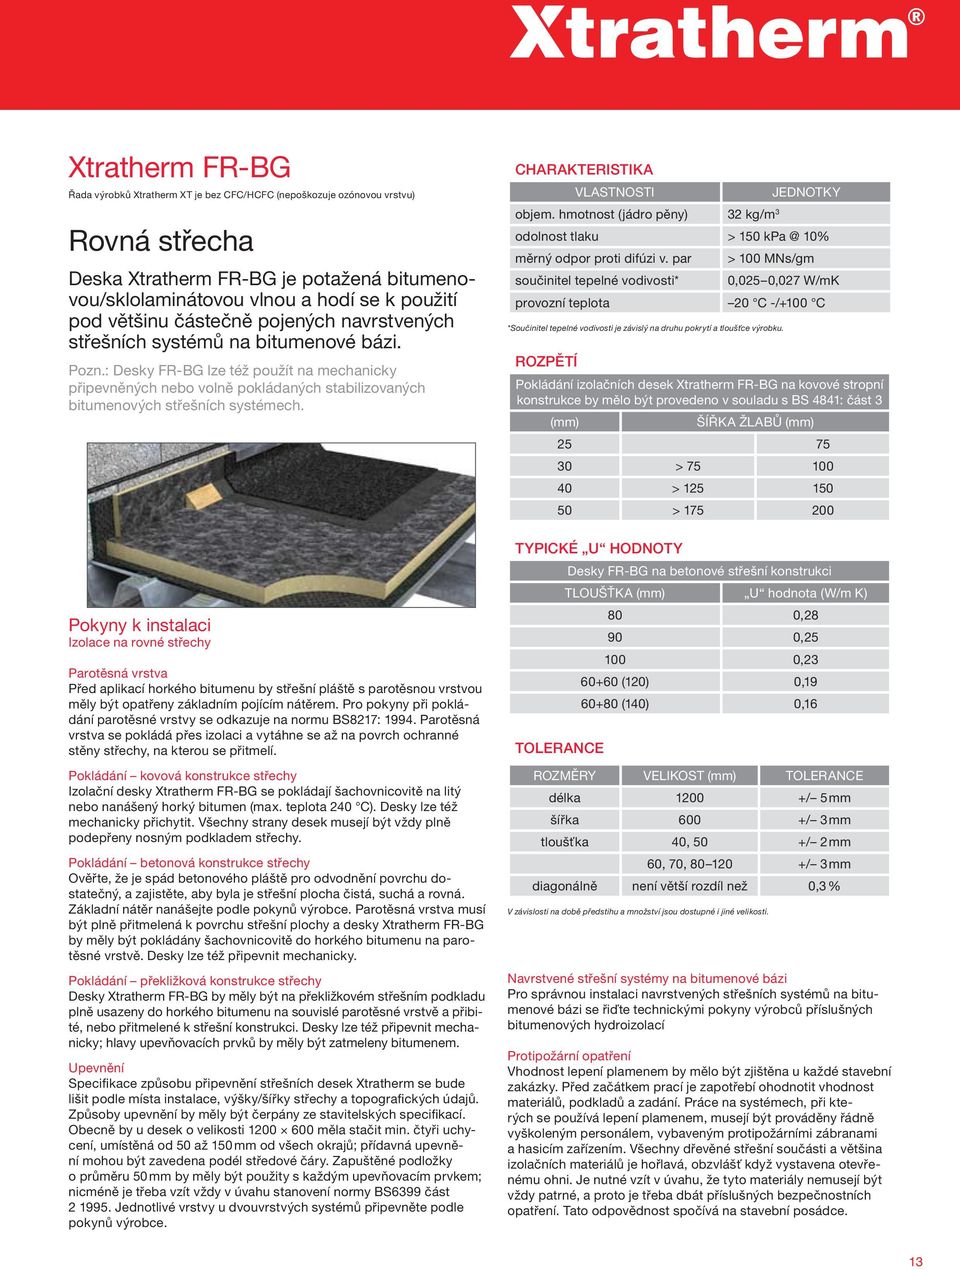 : Desky FR-BG lze též použít na mechanicky připevněných nebo volně pokládaných stabilizovaných bitumenových střešních systémech.